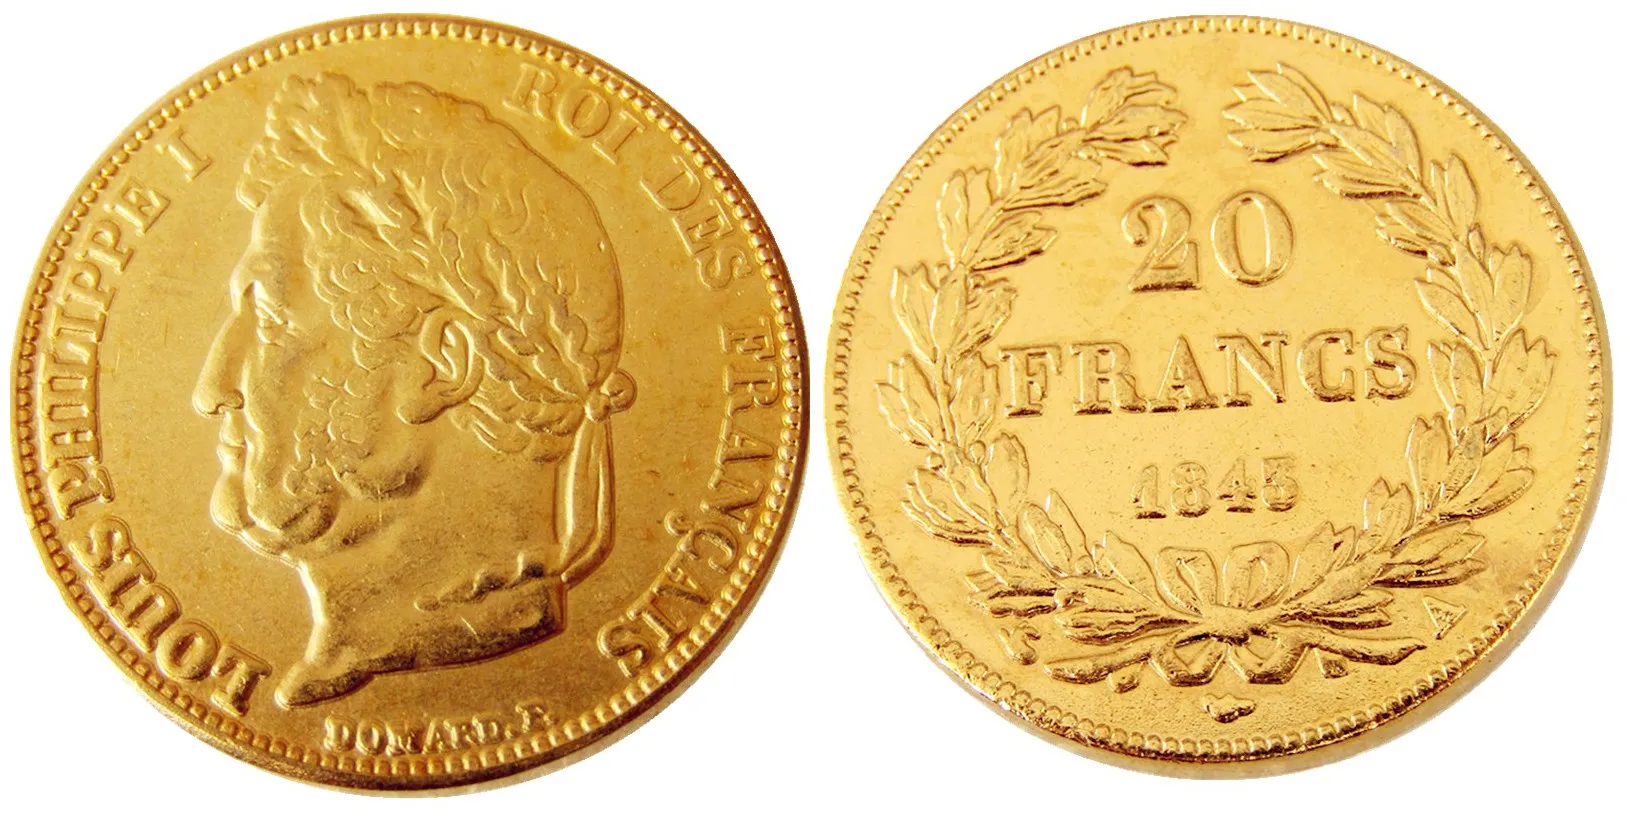 Francia 20 Francia 1843A Moneta decorativa placcata in oro Copia stampi in metallo prezzo di fabbrica di produzione